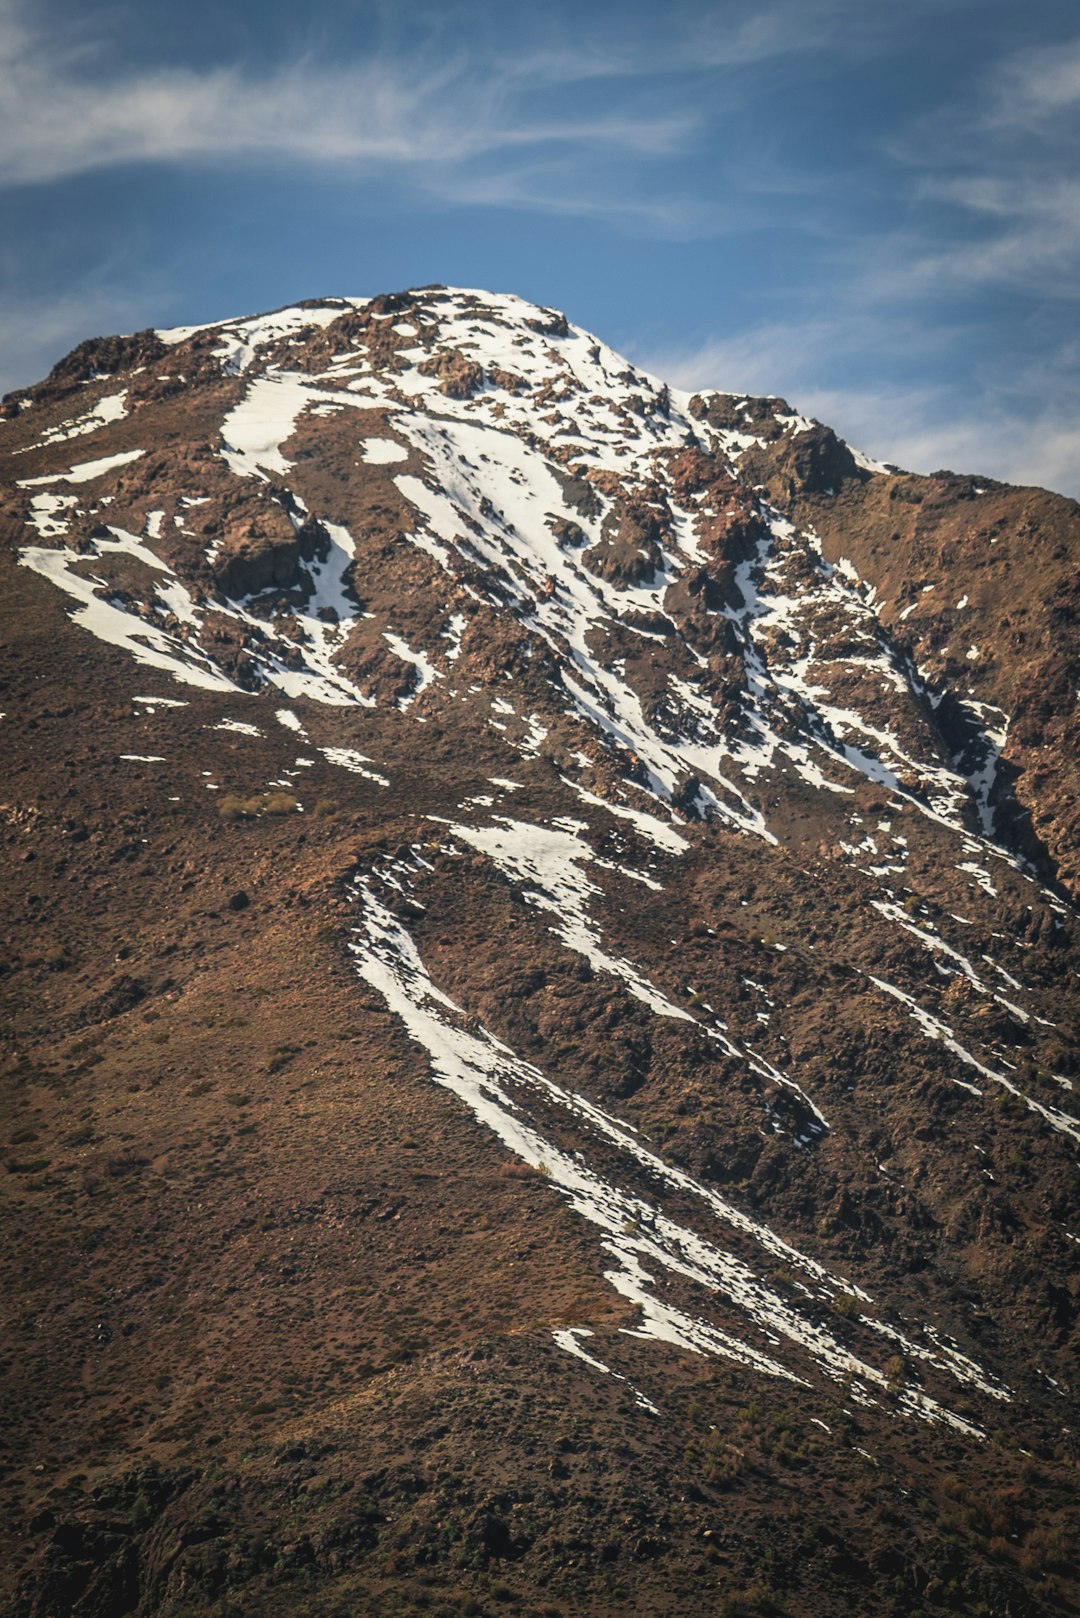 Mountain range photo spot Cerro Provincia La Parva